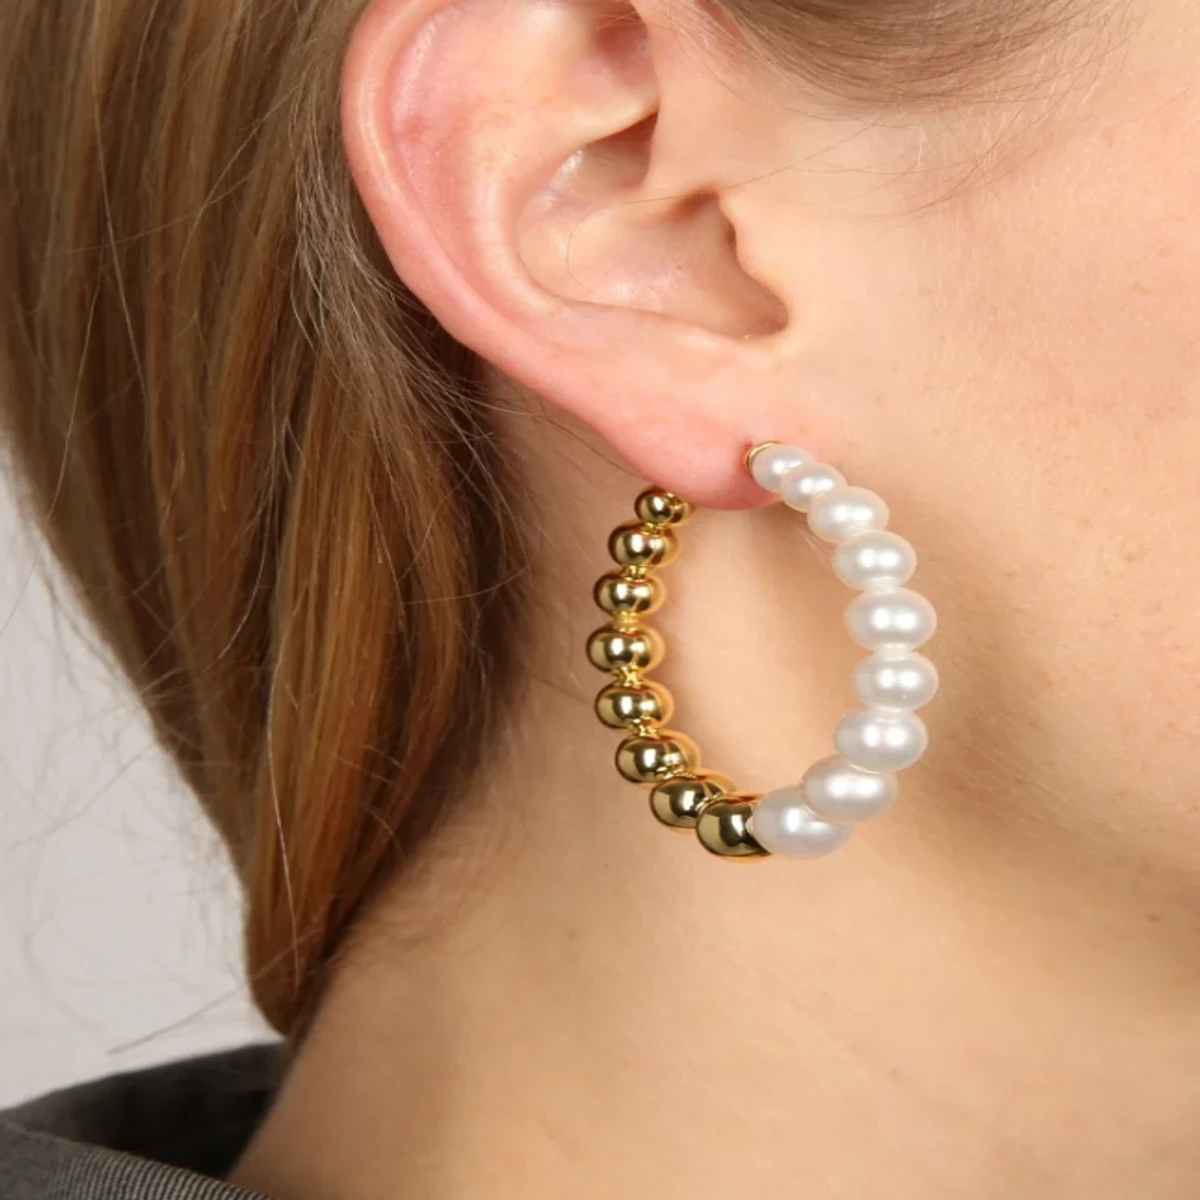 Silver pearl earrings for women